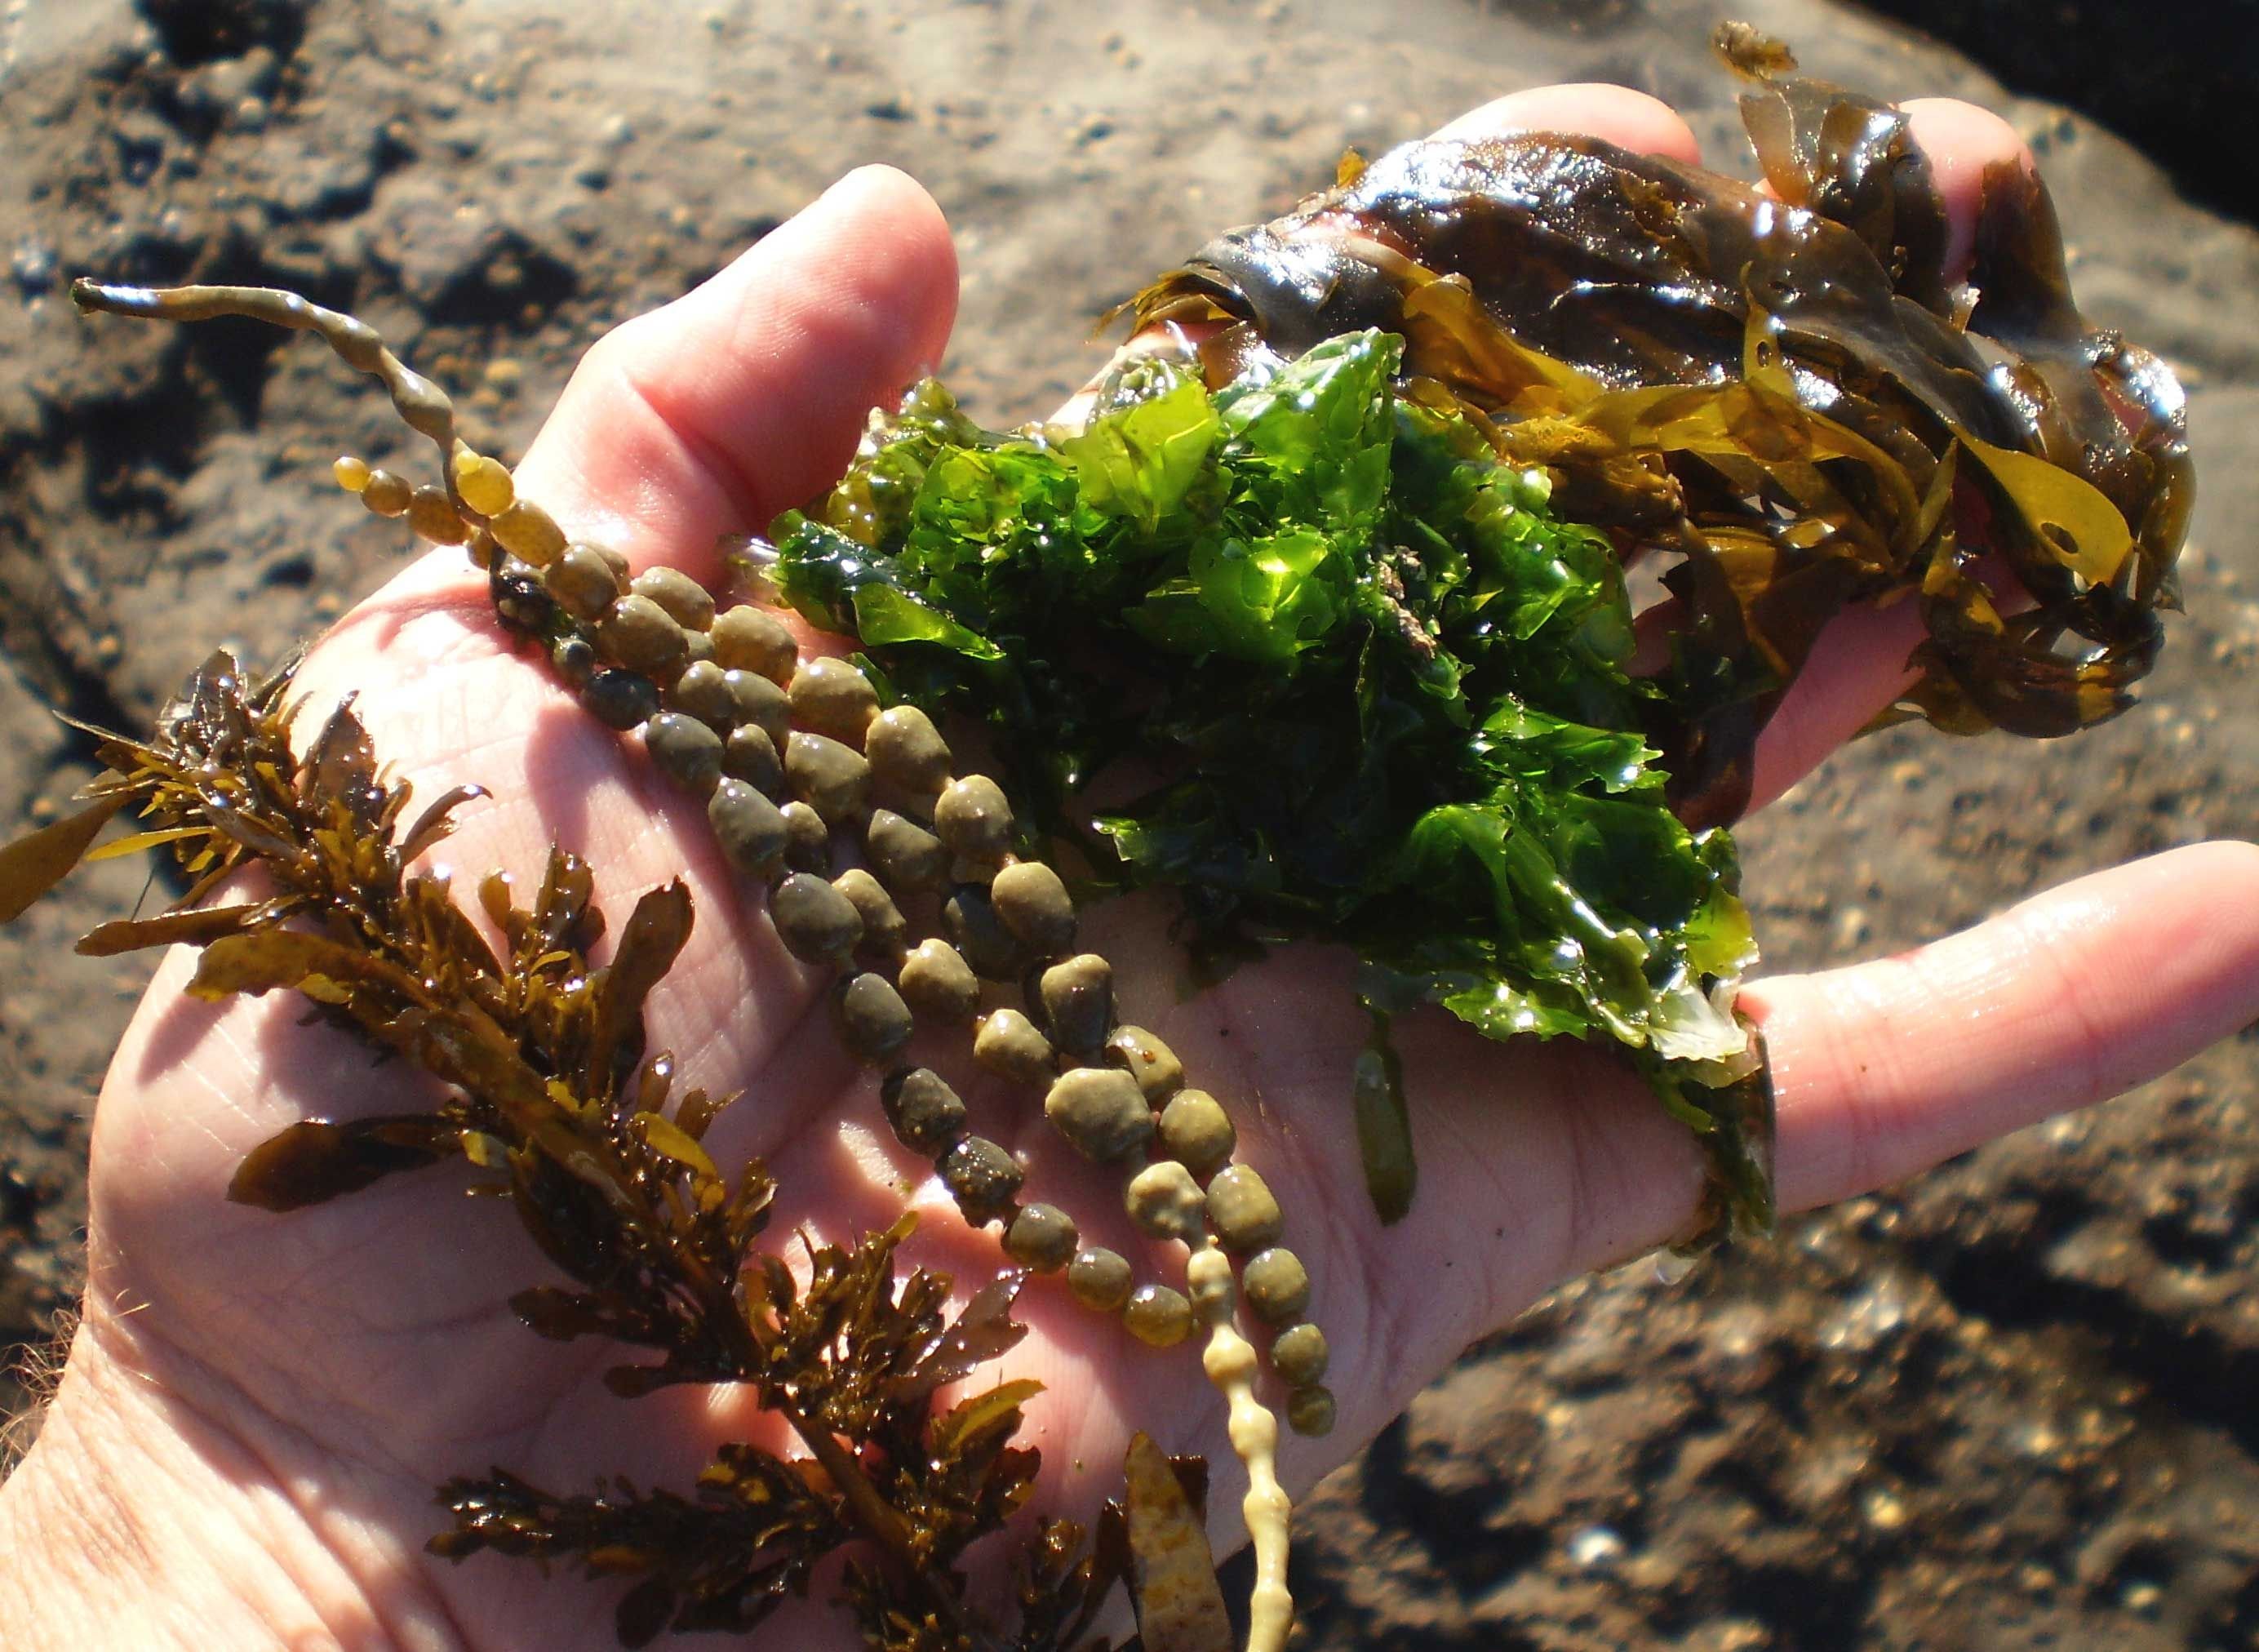 Ламинария съедобна. Фукус морской виноград. Морская капуста ламинария. Ламинария съедобная. Съедобные водоросли в море.